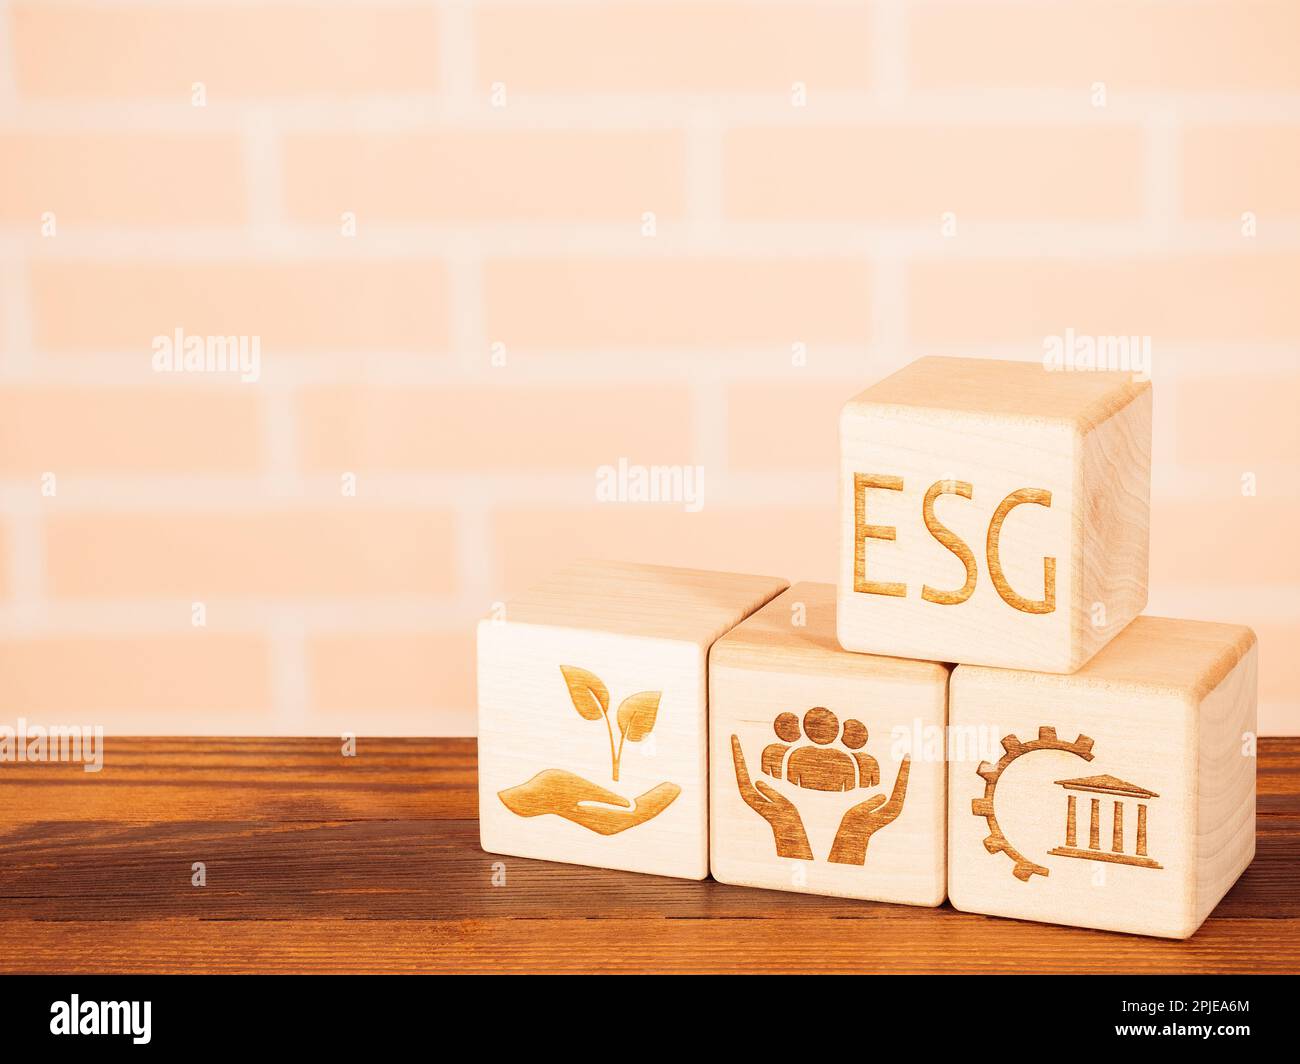 Les symboles environnementaux, de gouvernance et sociaux sur les panneaux de bois comme concept des principes ESG Banque D'Images